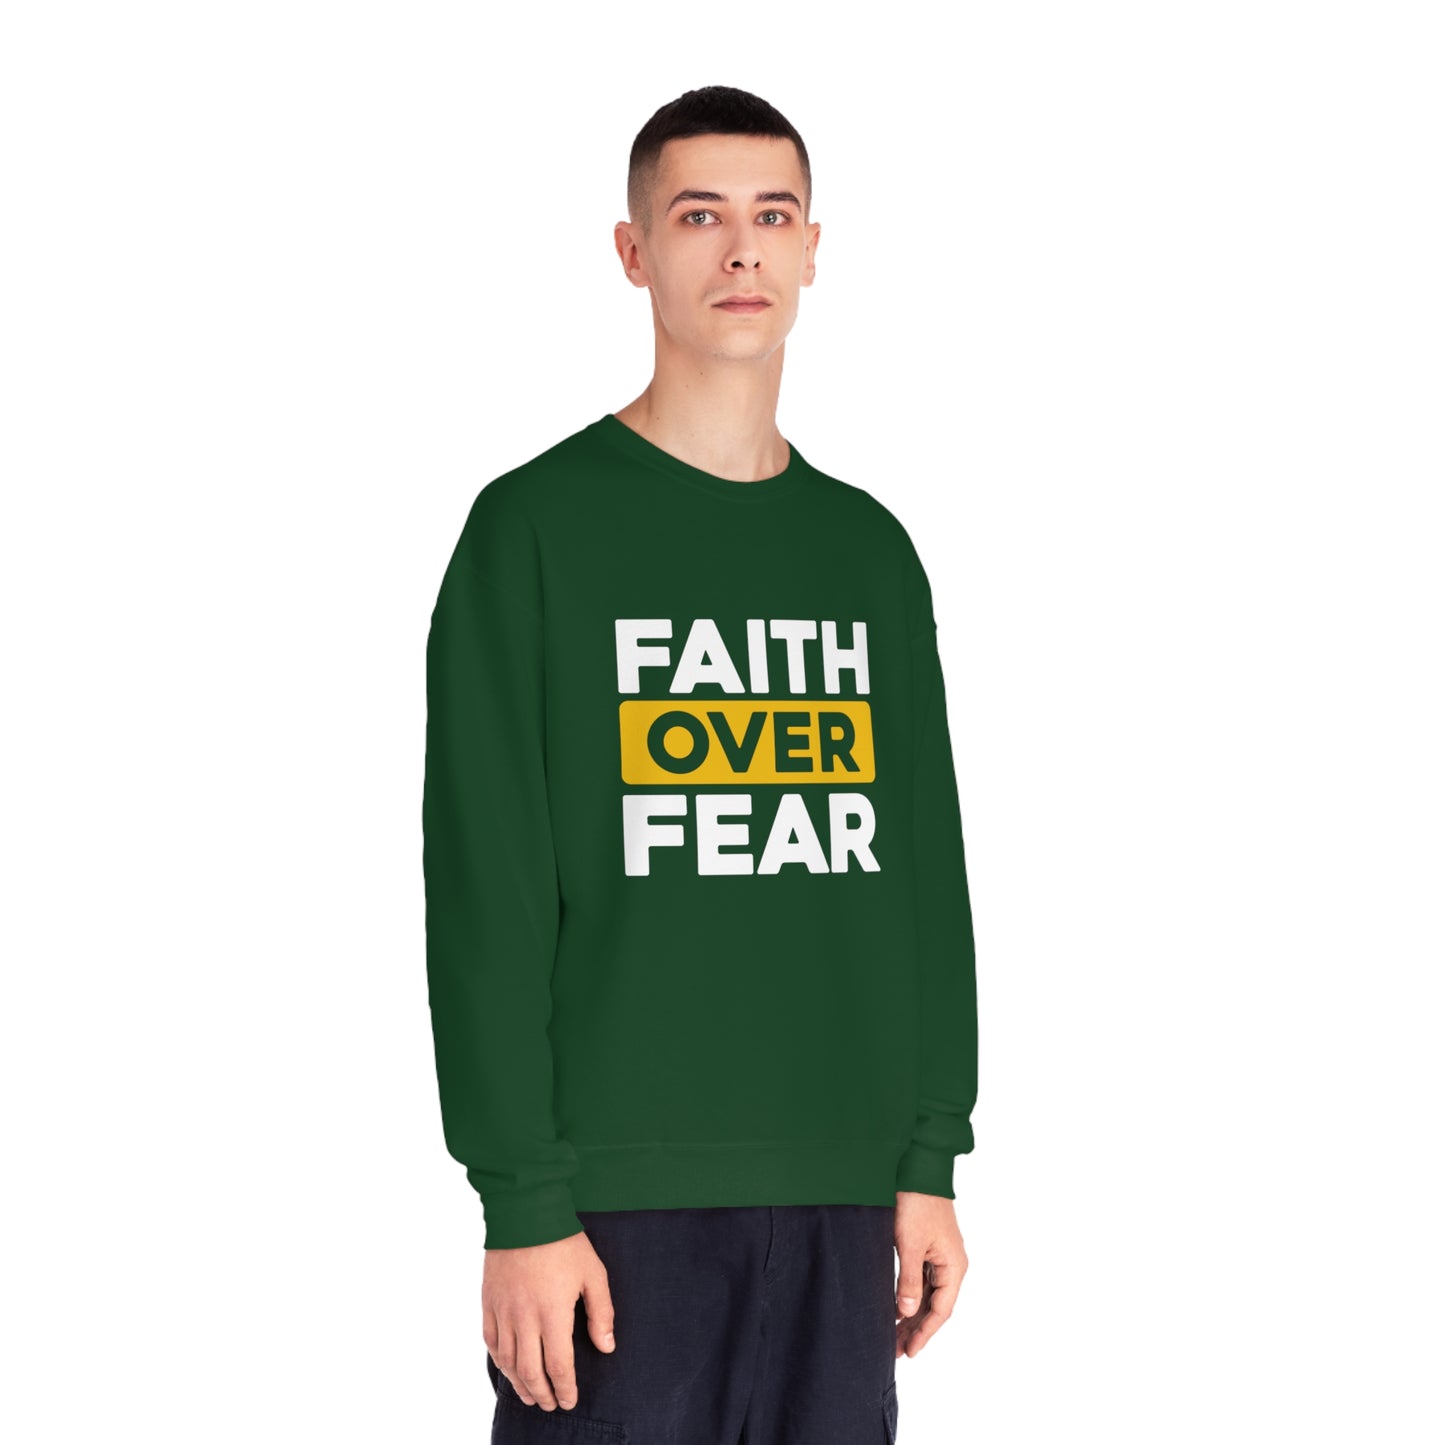 FAITH OVER FEAR SWEATSHIRT